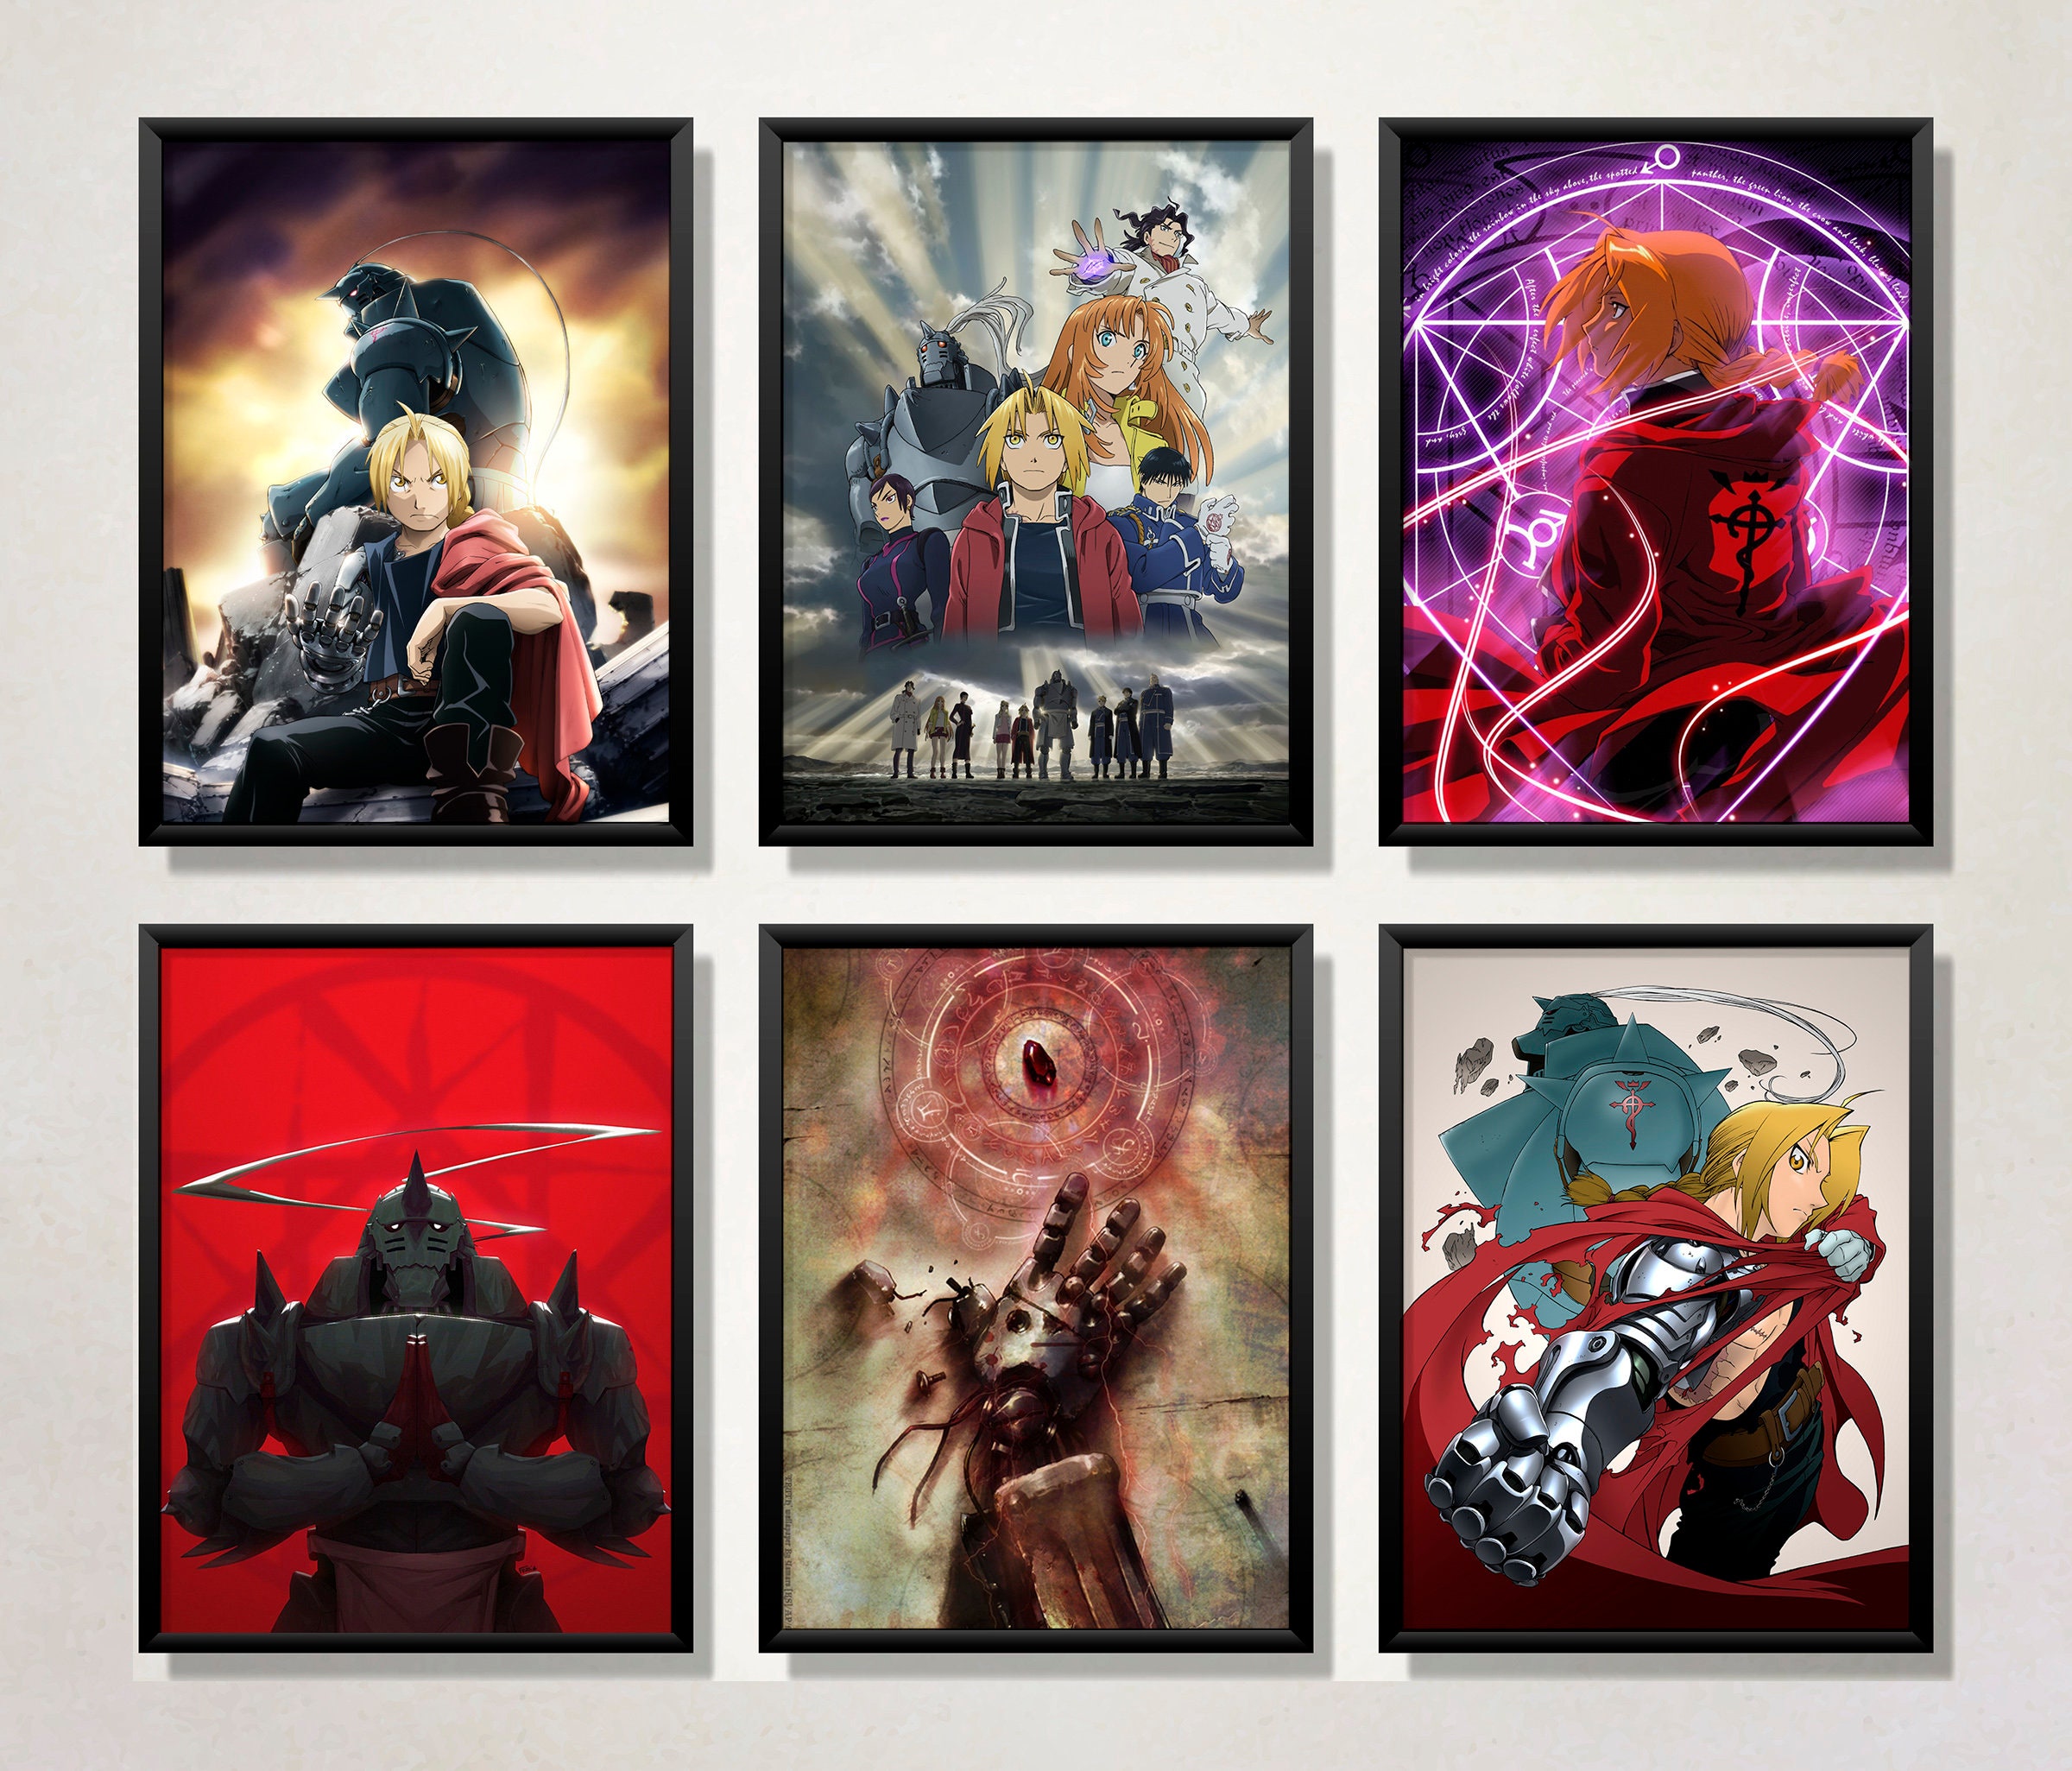 minimalist poster  Fullmetal alchemist, Anime printables, Anime films